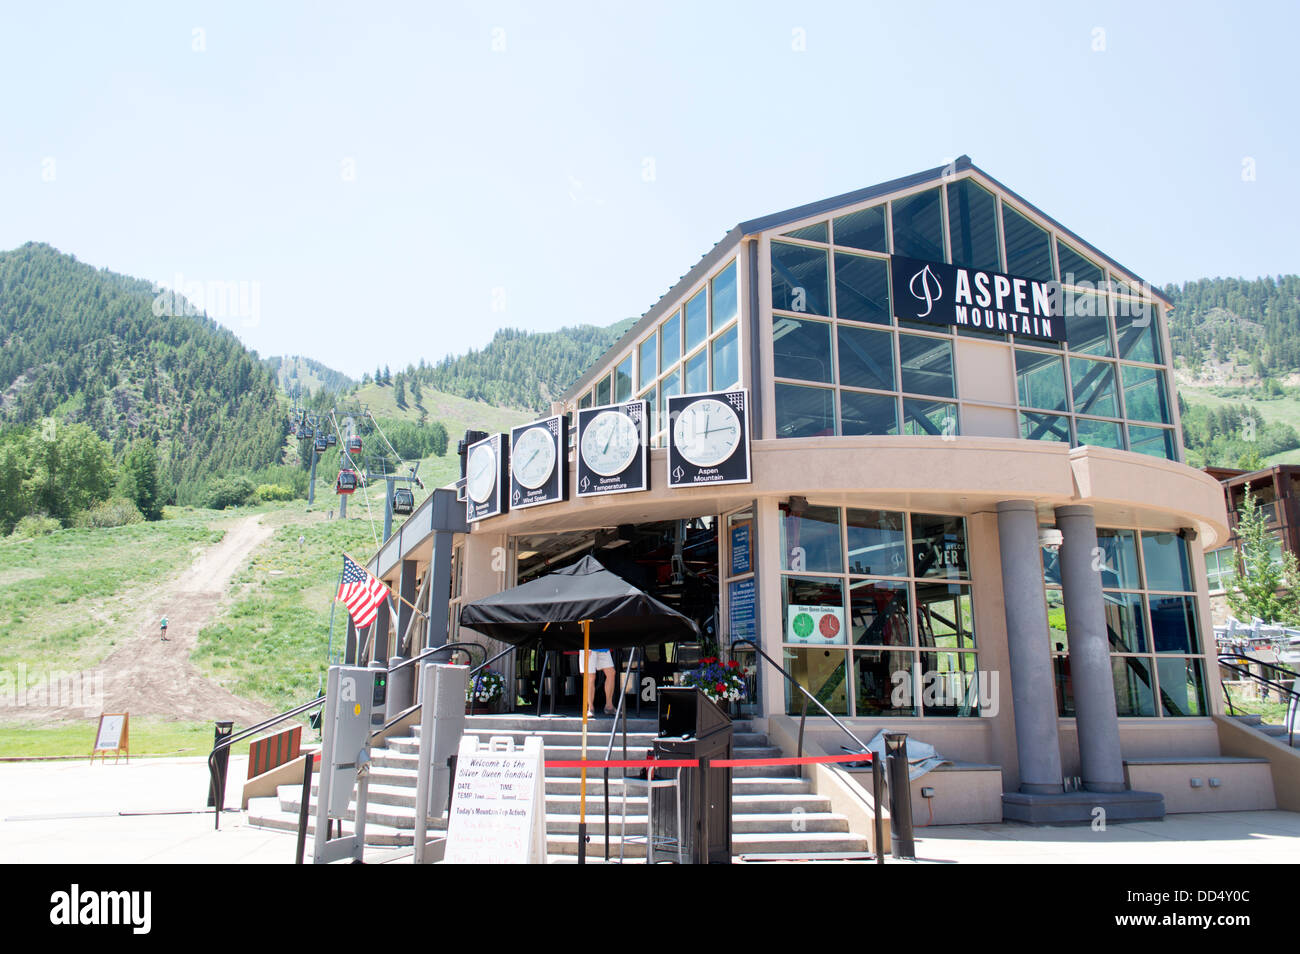 The gondola station at Aspen ski resort in Colorado. Stock Photo